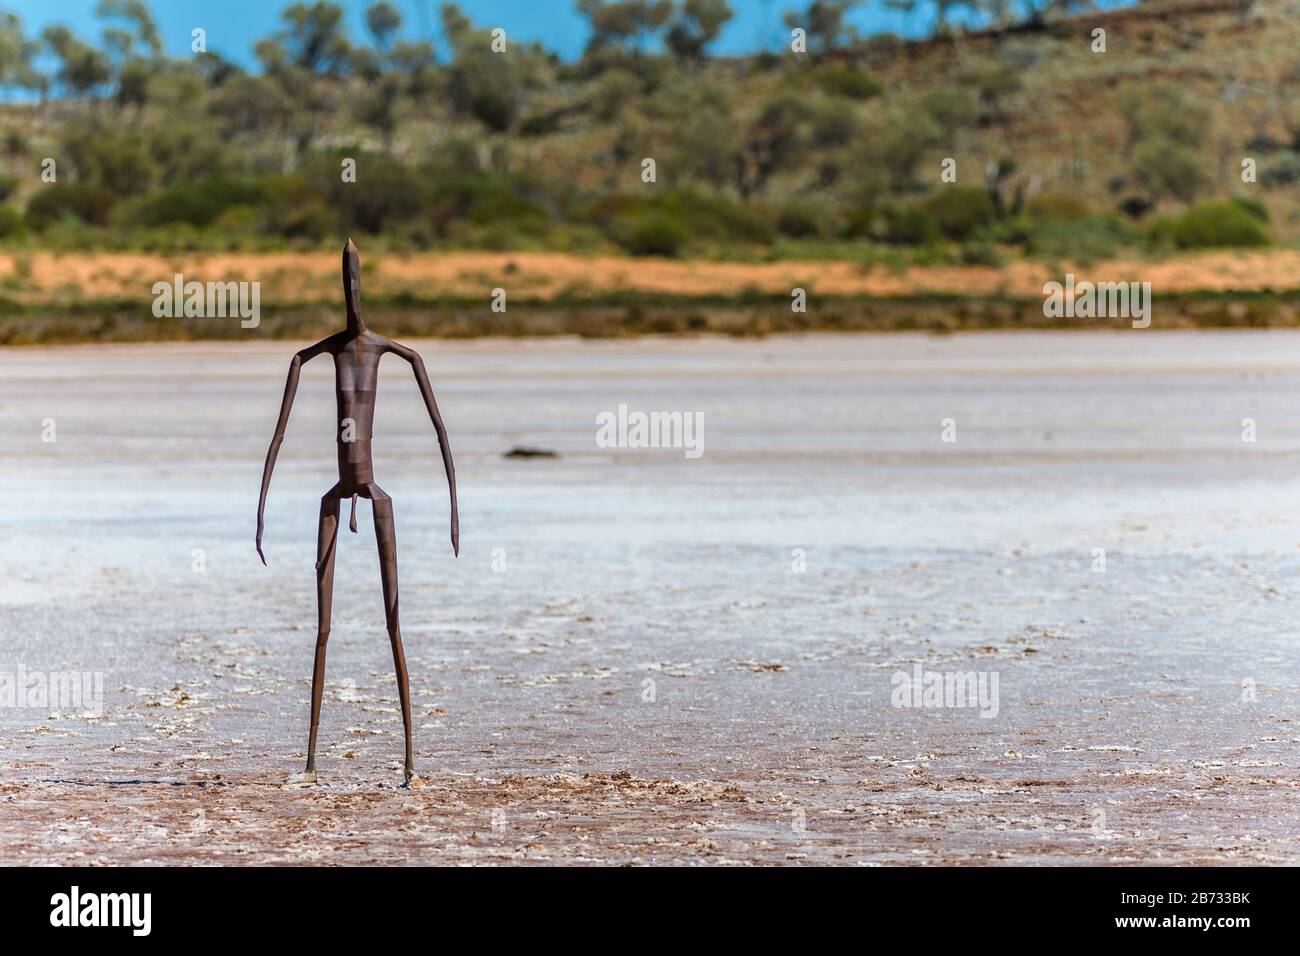 Blick auf einen Teil der Metall-Skulpturen-Kunstinstallation des Künstlers Antony Gormley am Lake Ballard in Western Australia. Stockfoto